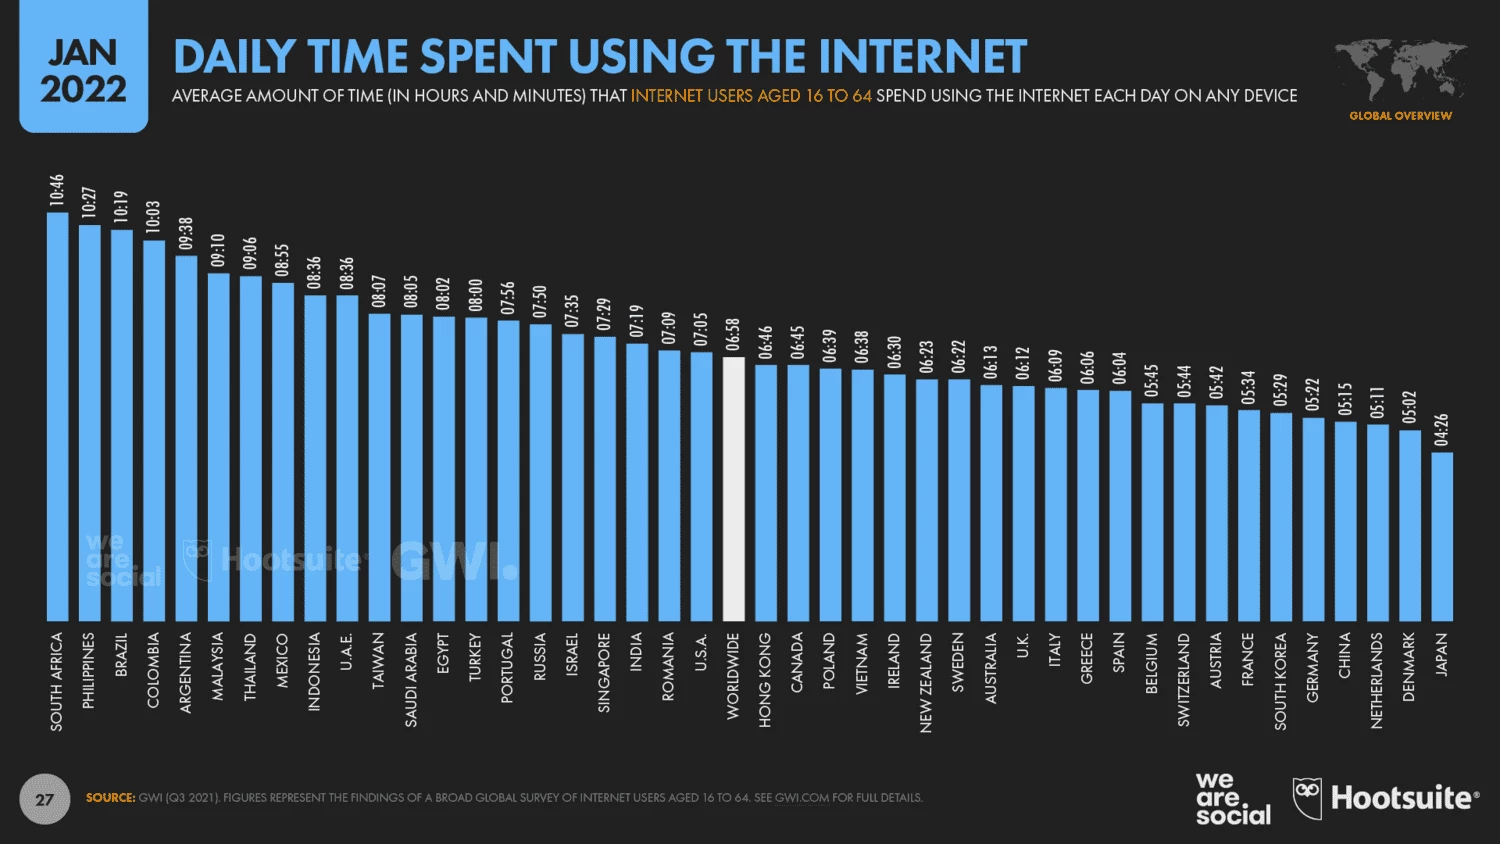 При этом средний китаец проводит в интернете 5 часов 15 минут в день